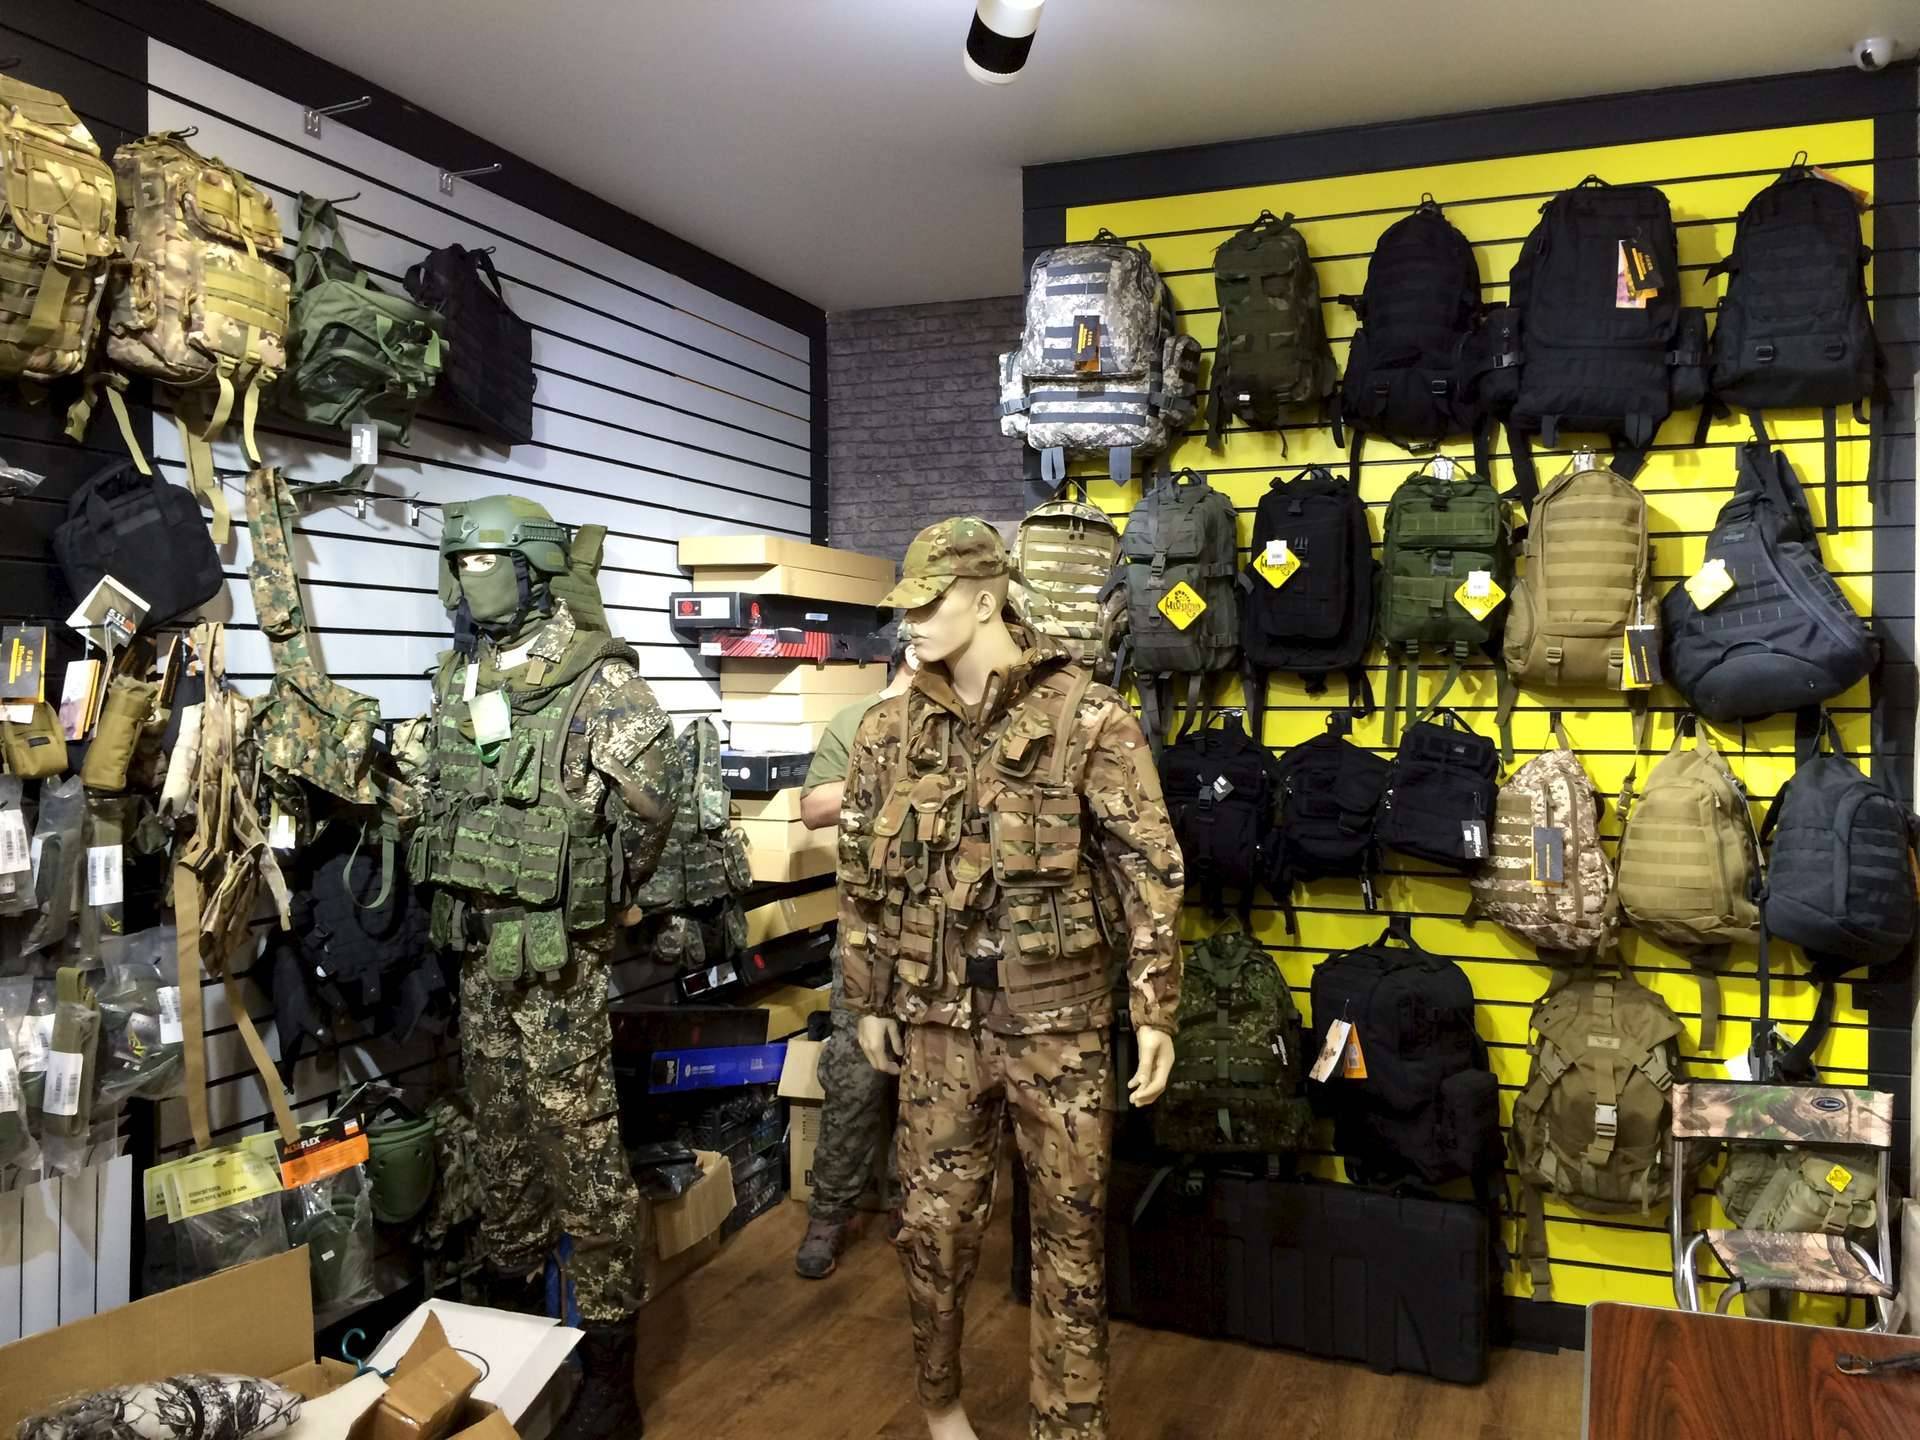 Тактическая одежда – военная униформа или гламурный милитари